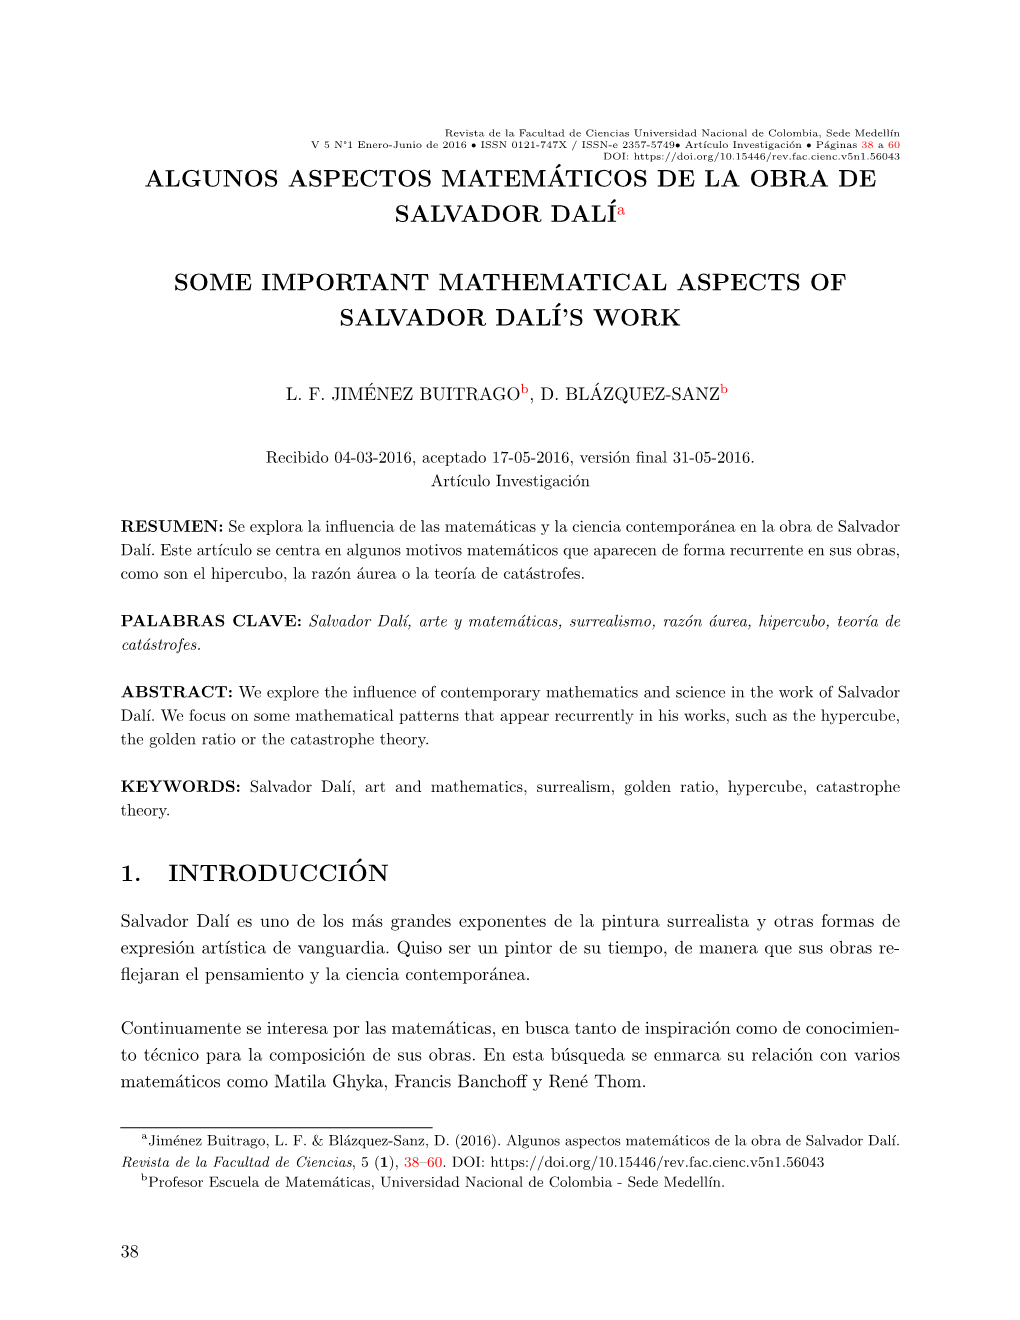 ALGUNOS ASPECTOS MATEM´ATICOS DE LA OBRA DE SALVADOR Dalía SOME IMPORTANT MATHEMATICAL ASPECTS of SALVADOR DALÍ's WORK 1. I